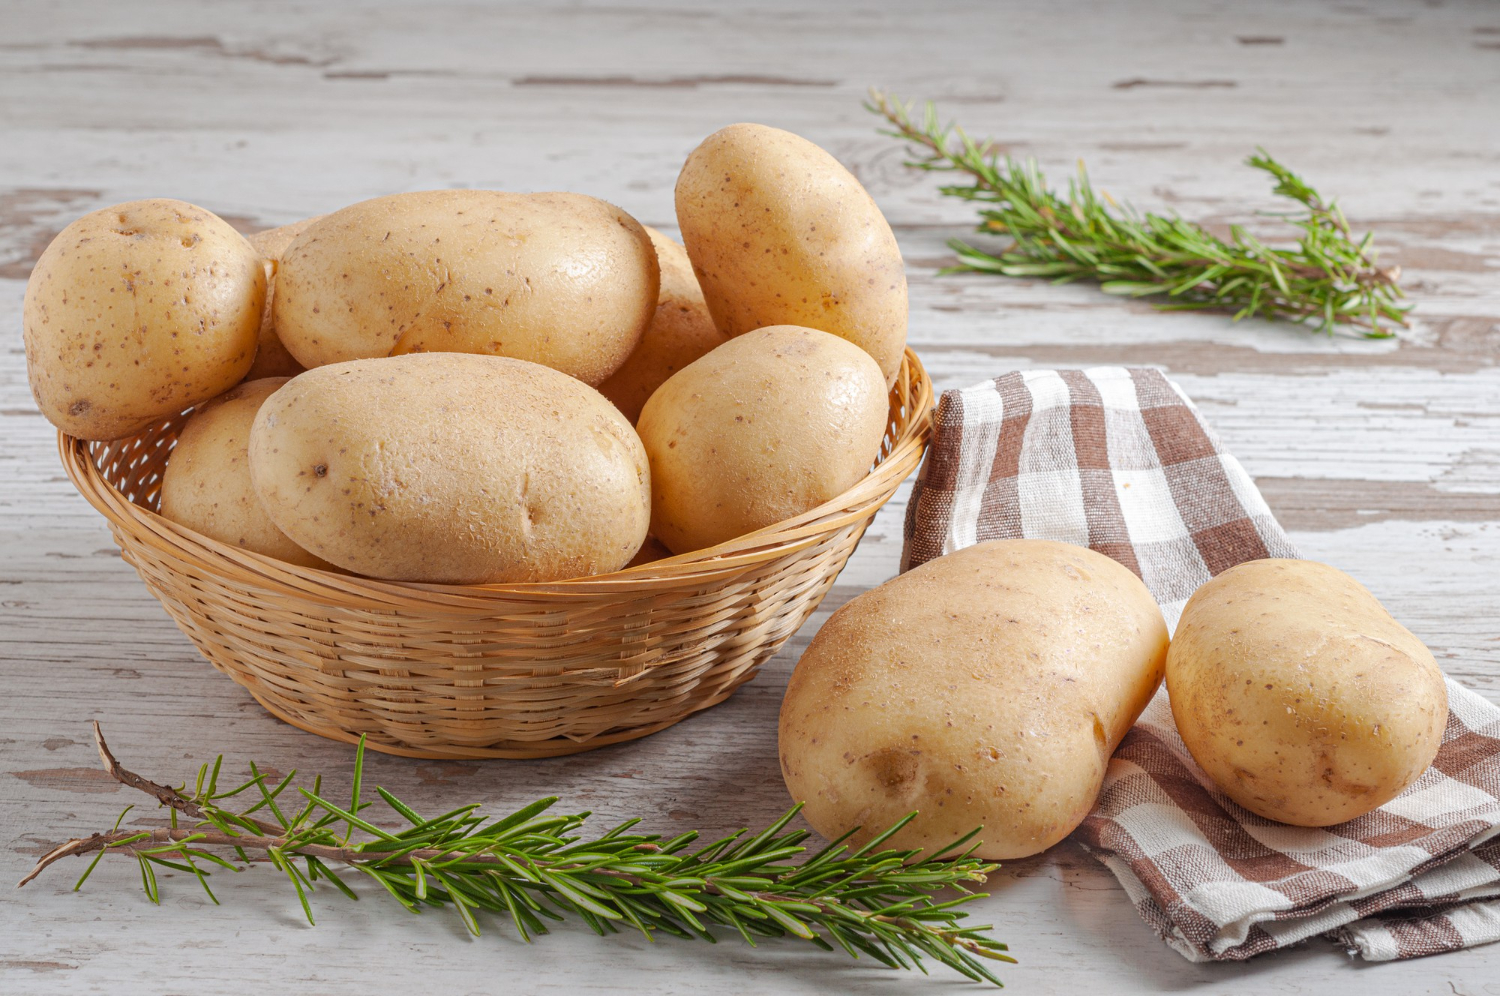  Симпатия к картофелю: знайте 6 самых мощных для любви